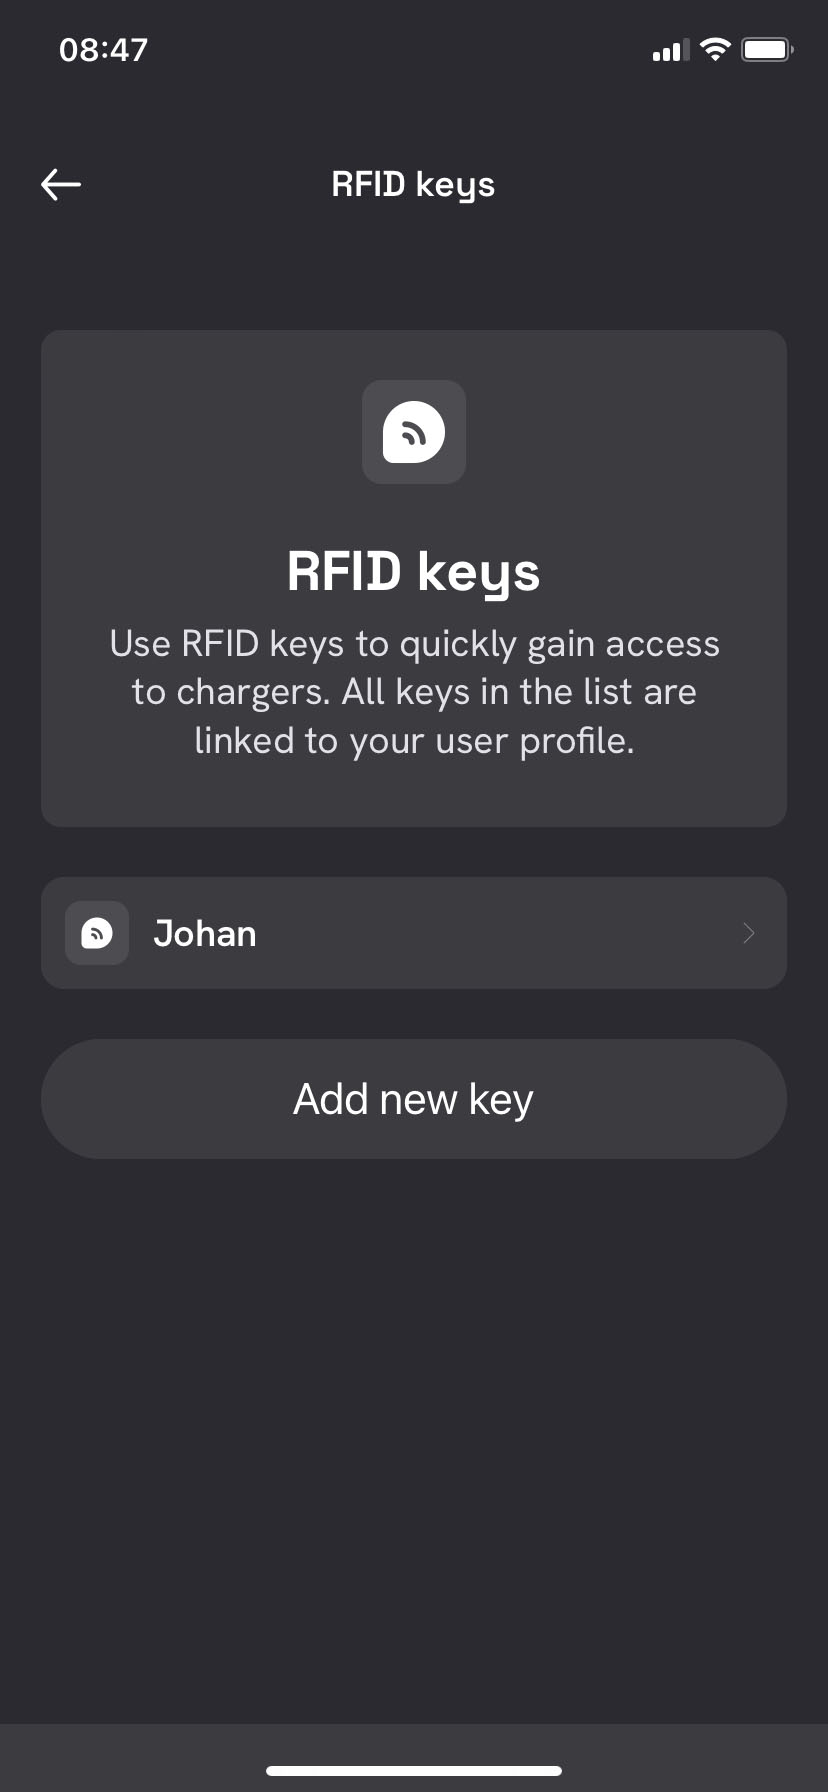 RFID Nyckel - Översikt i Defa power app